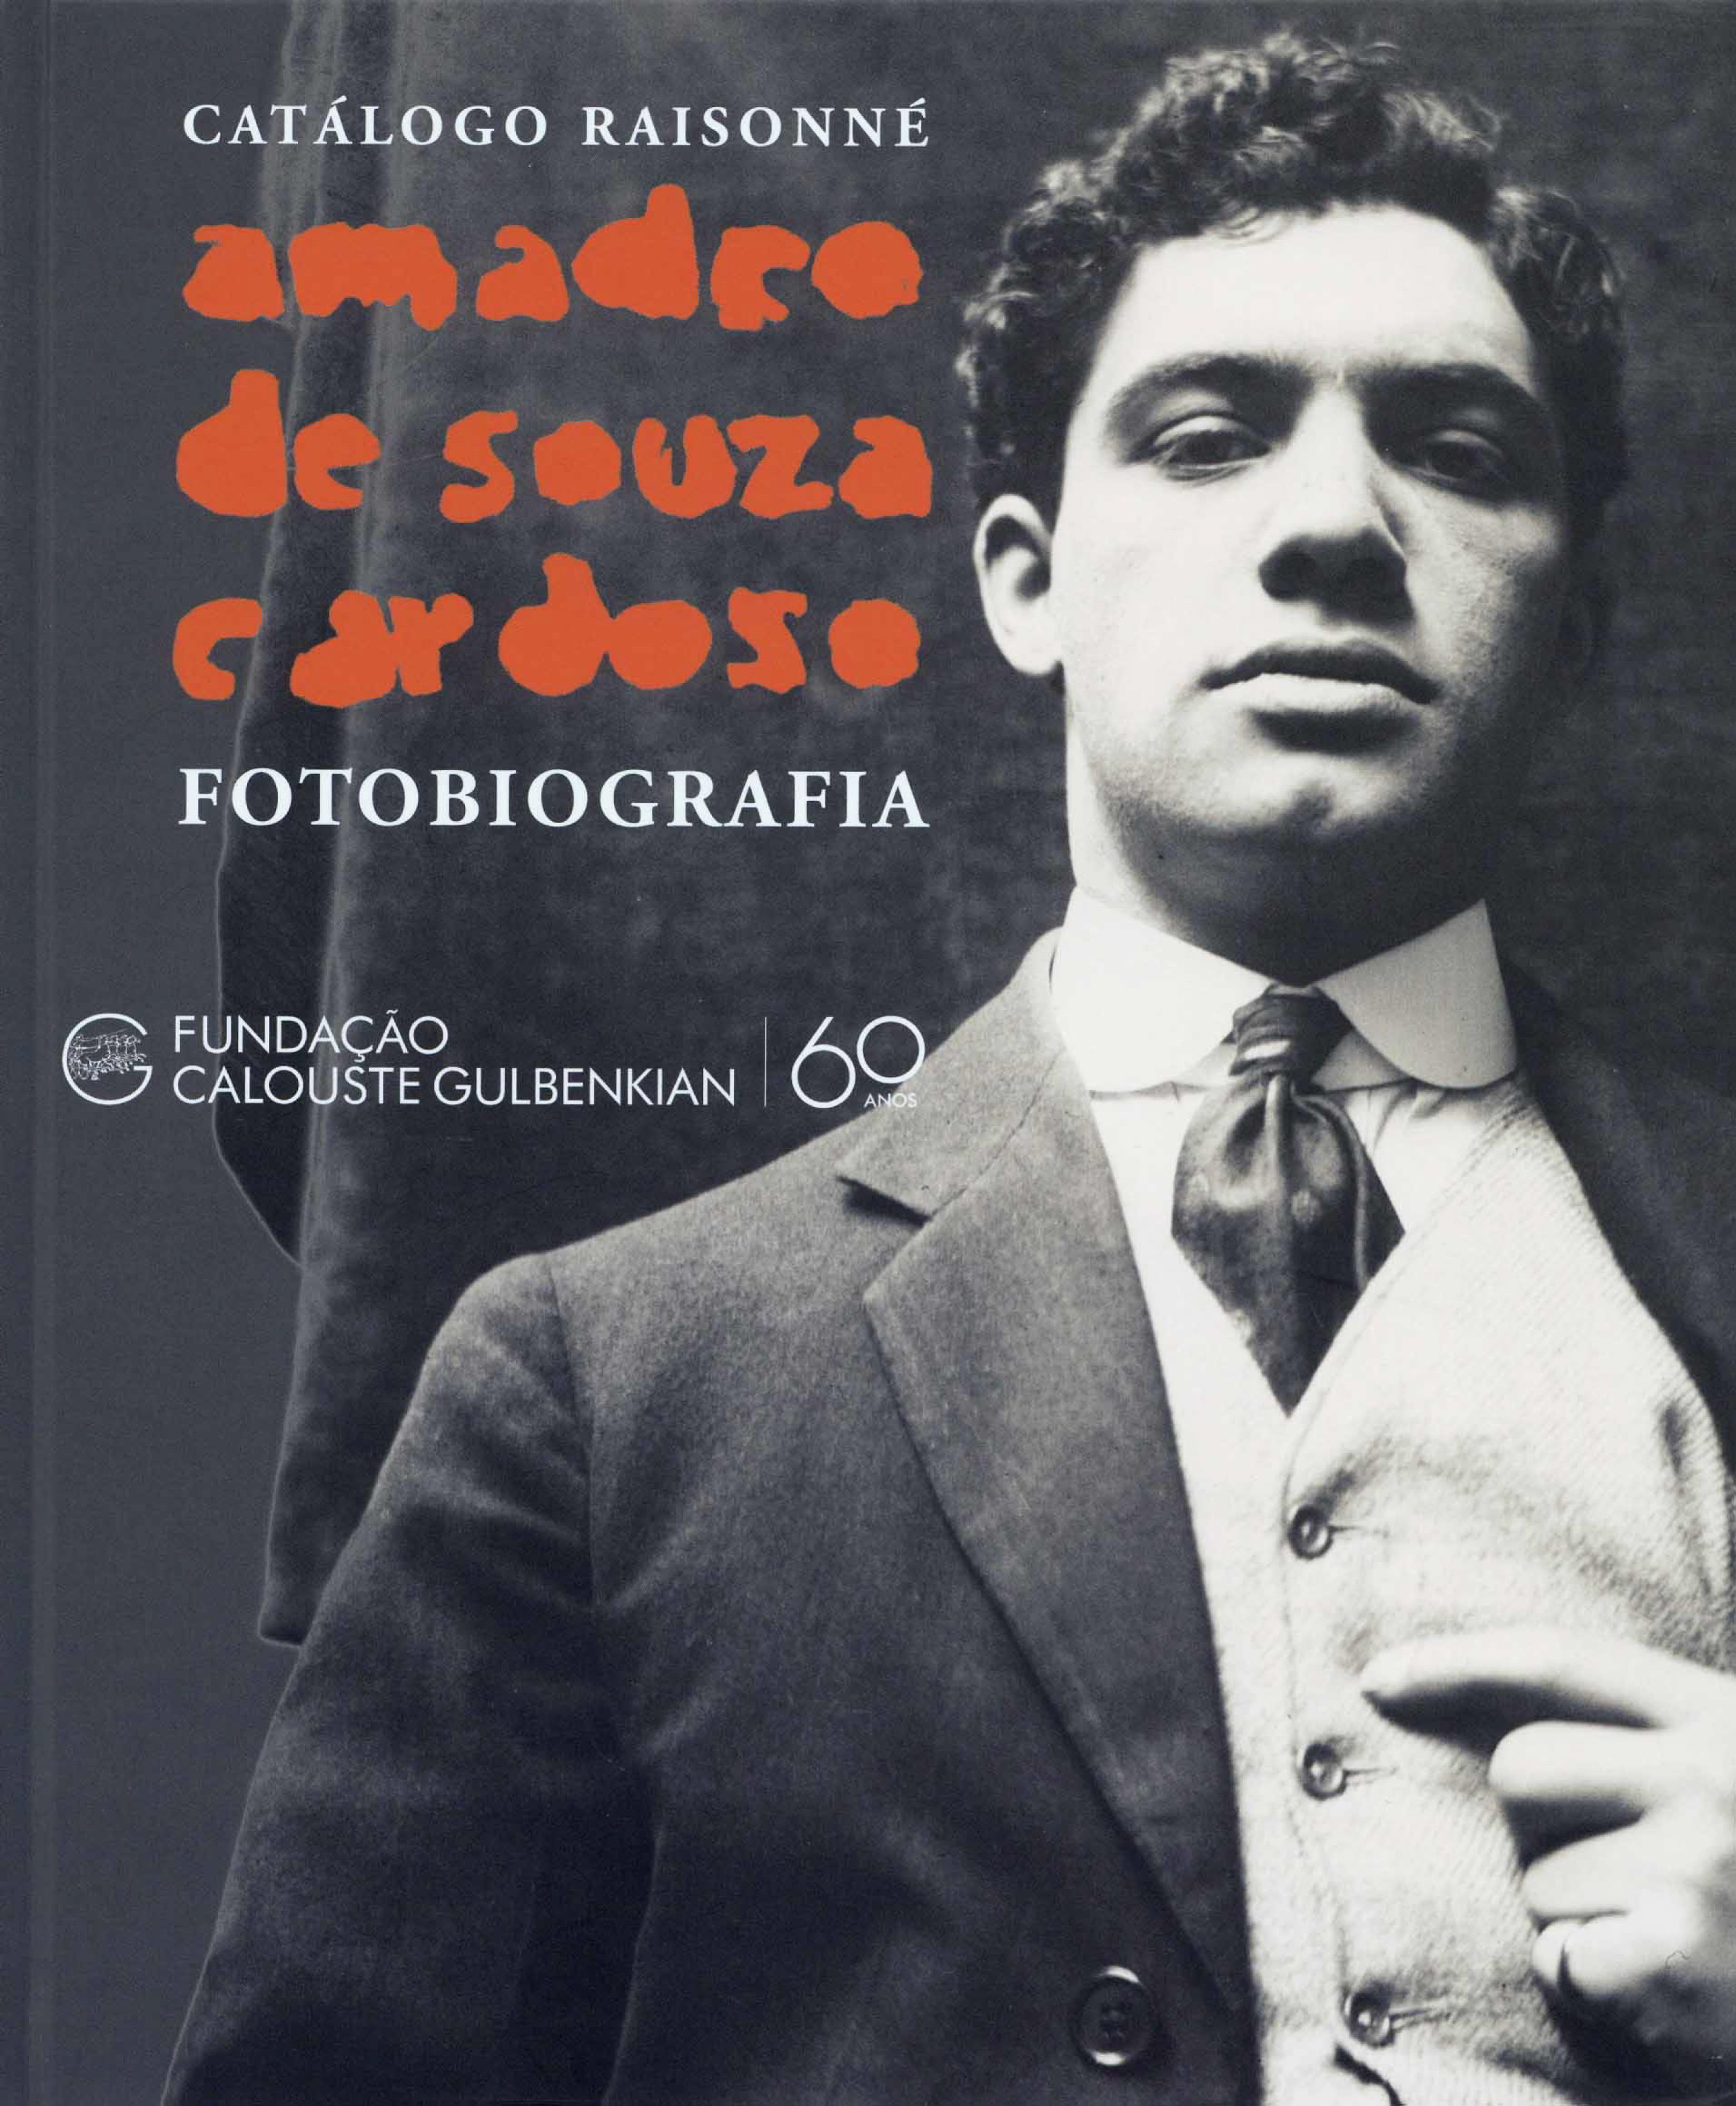 Amadeo de Souza-Cardoso: Fotobiografia. Catálogo Raisonné